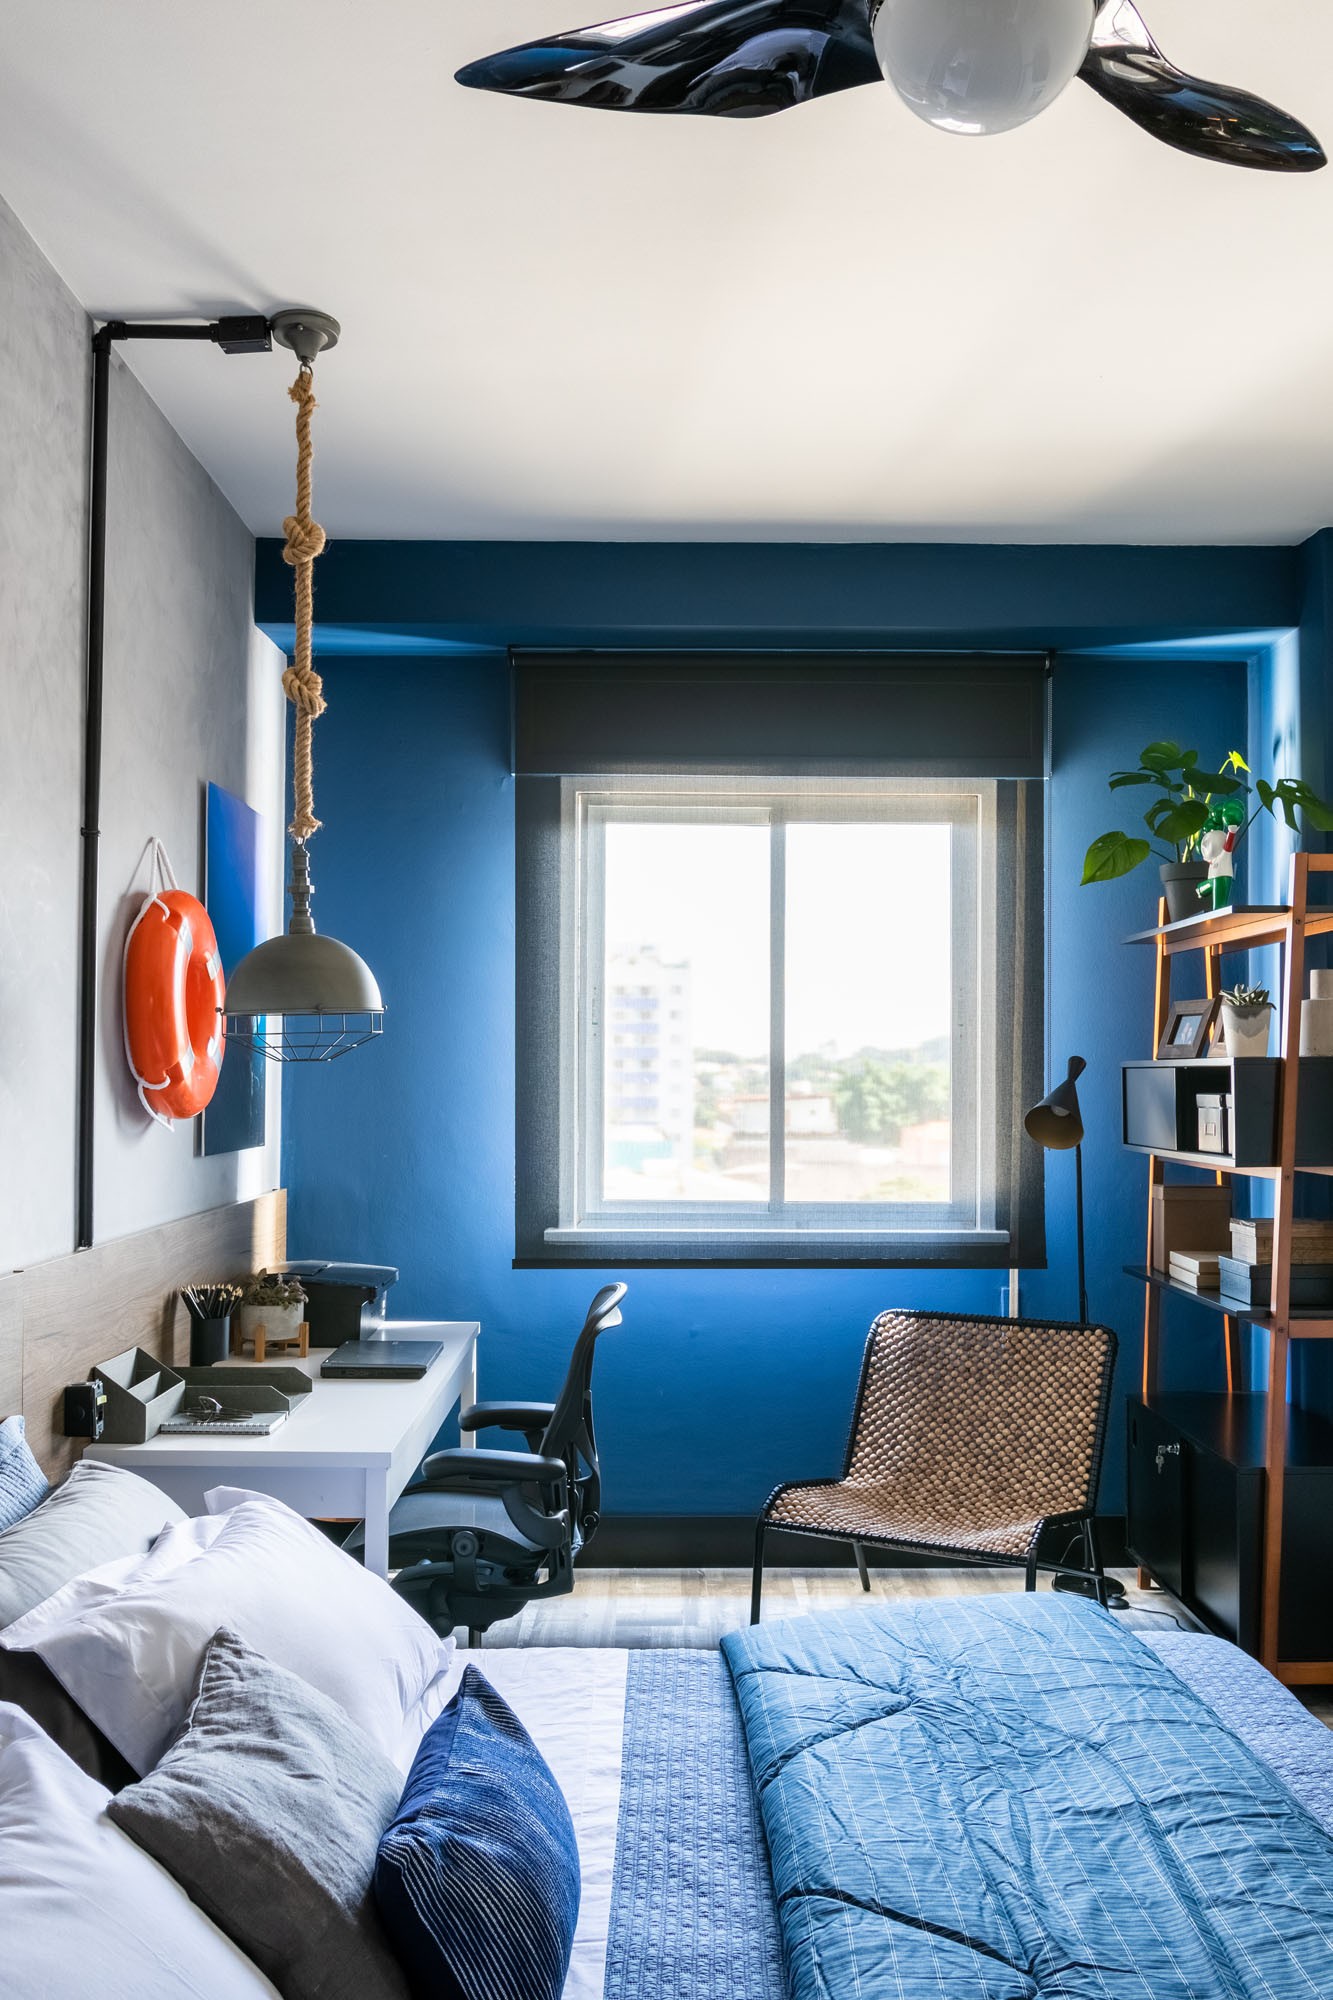 Décor do dia: quarto industrial com parede na cor Classic Blue (Foto: Divulgação)